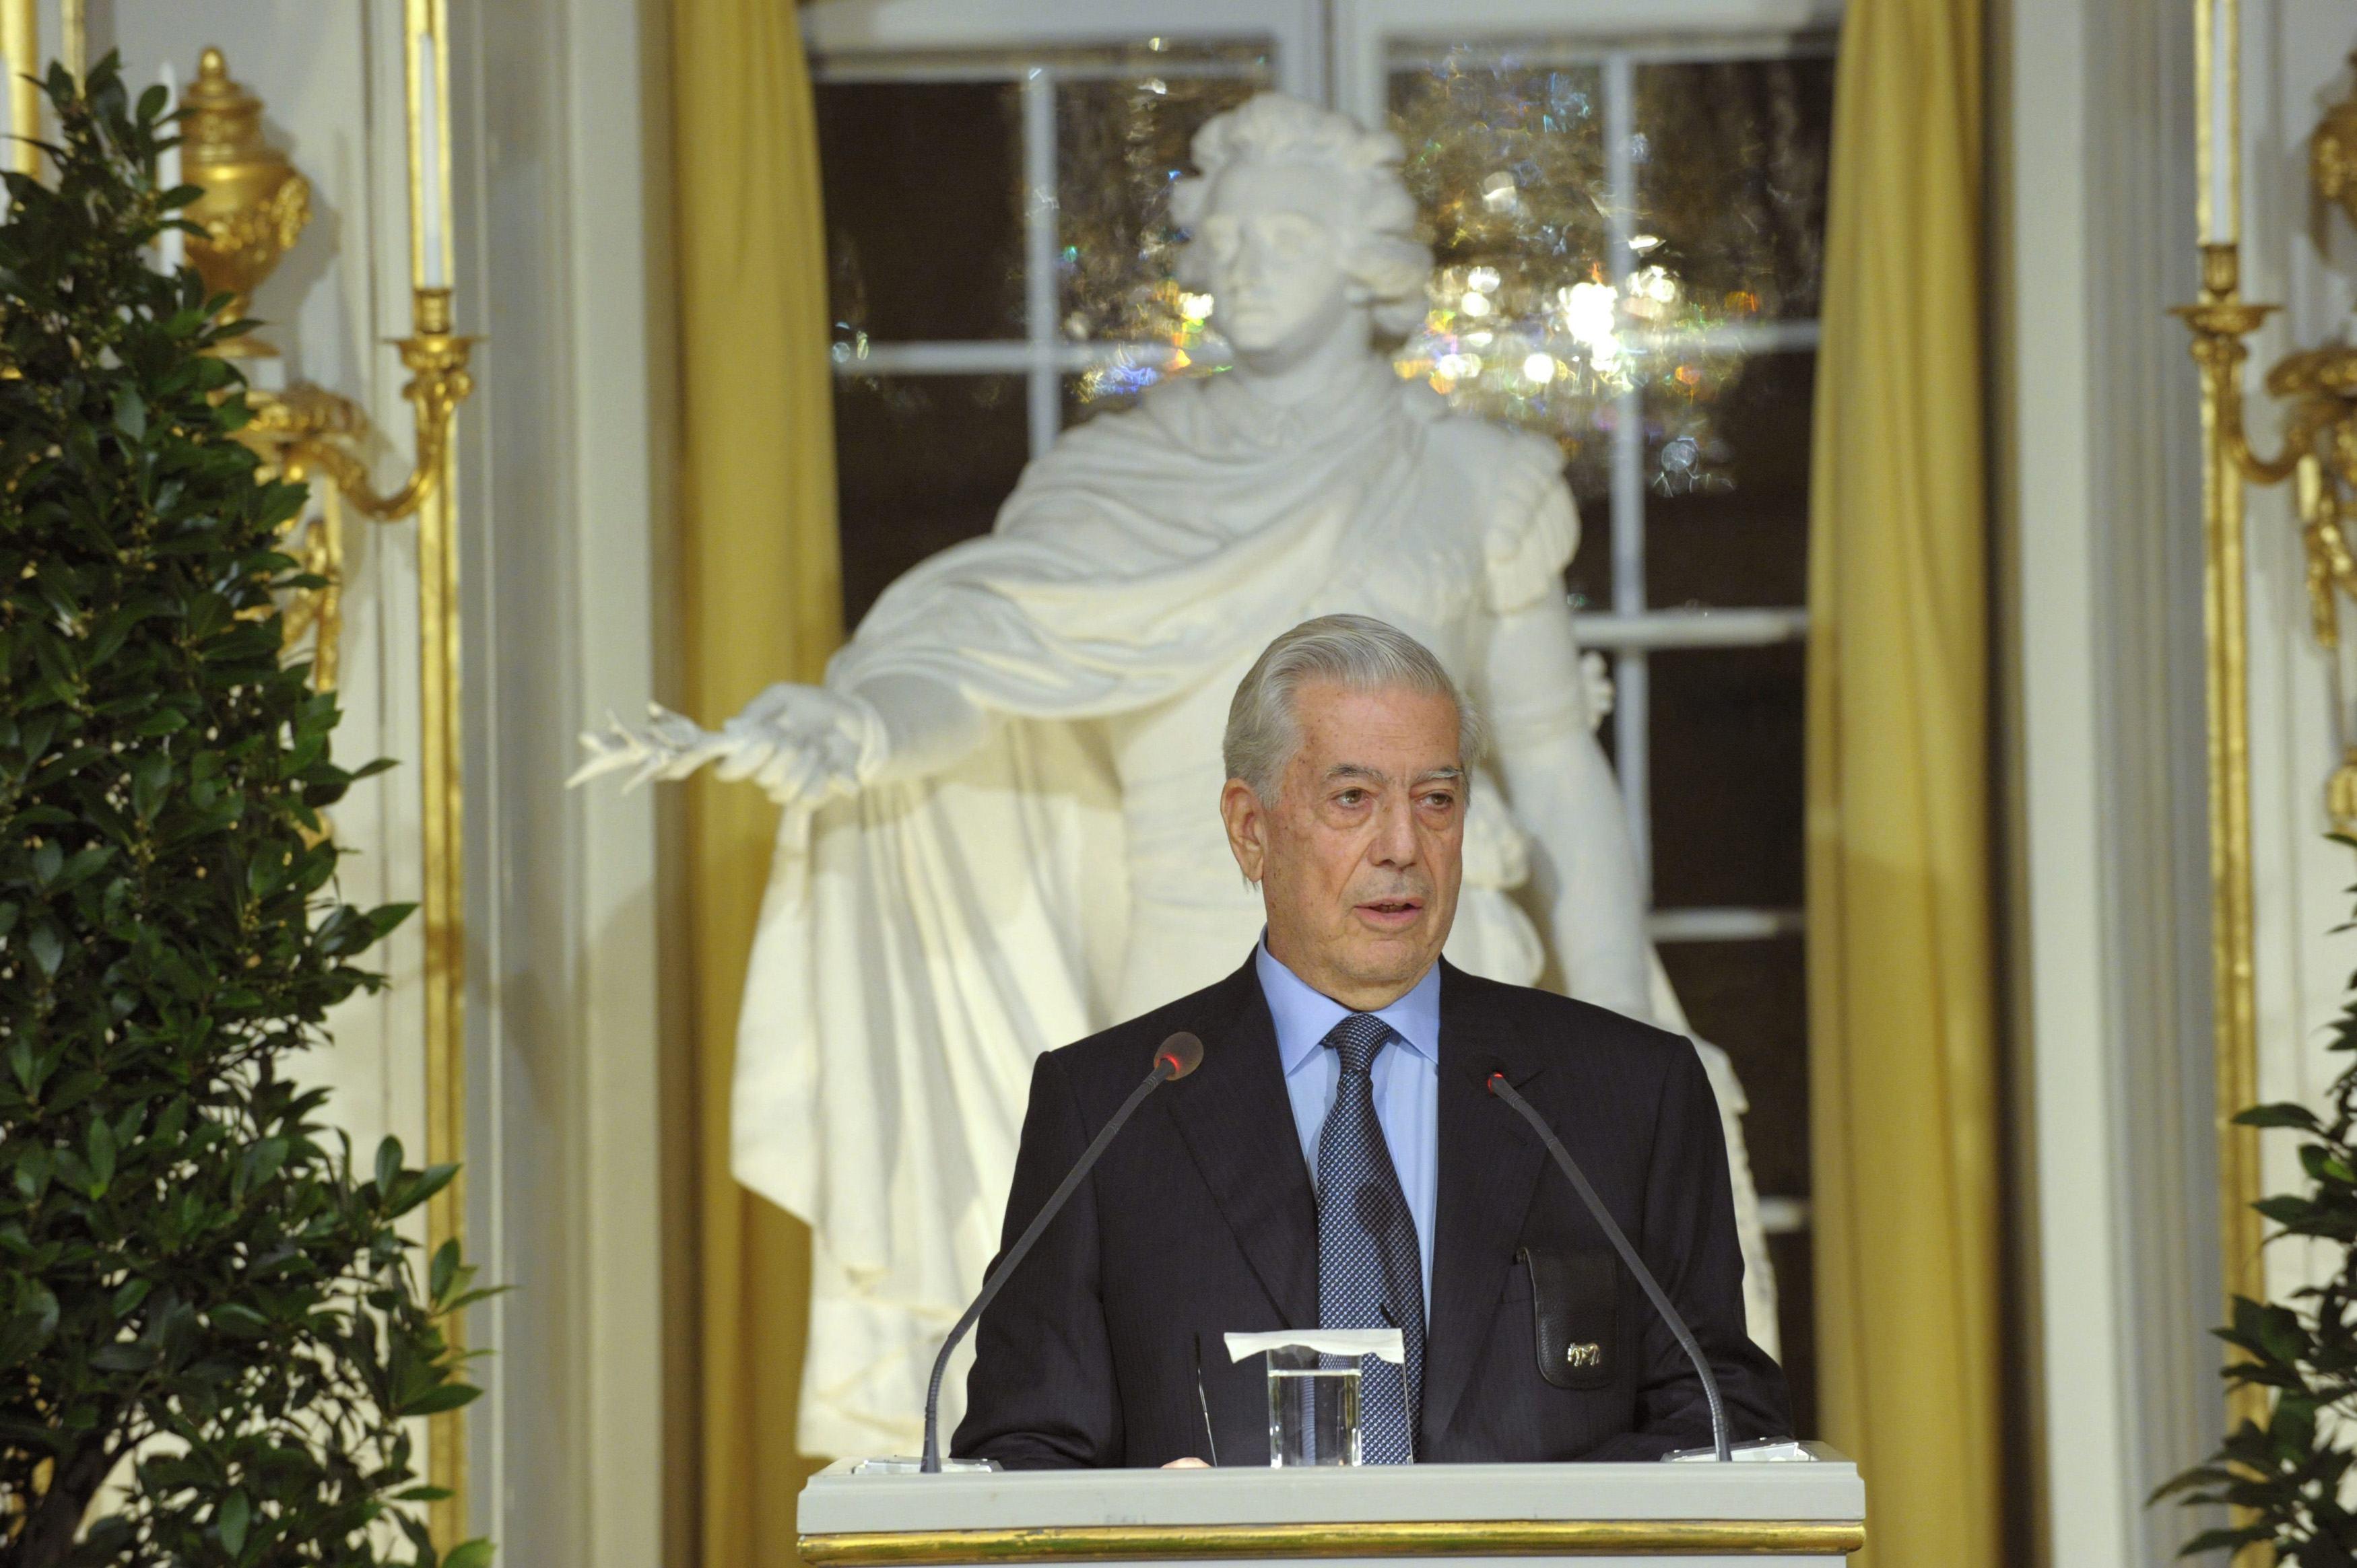 Este lunes 7 de octubre se cumplen 9 años desde que la Academia Sueca le otorgó el premio Nobel de Literatura al escritor peruano Mario Vargas Llosa. (Foto: Reuters)